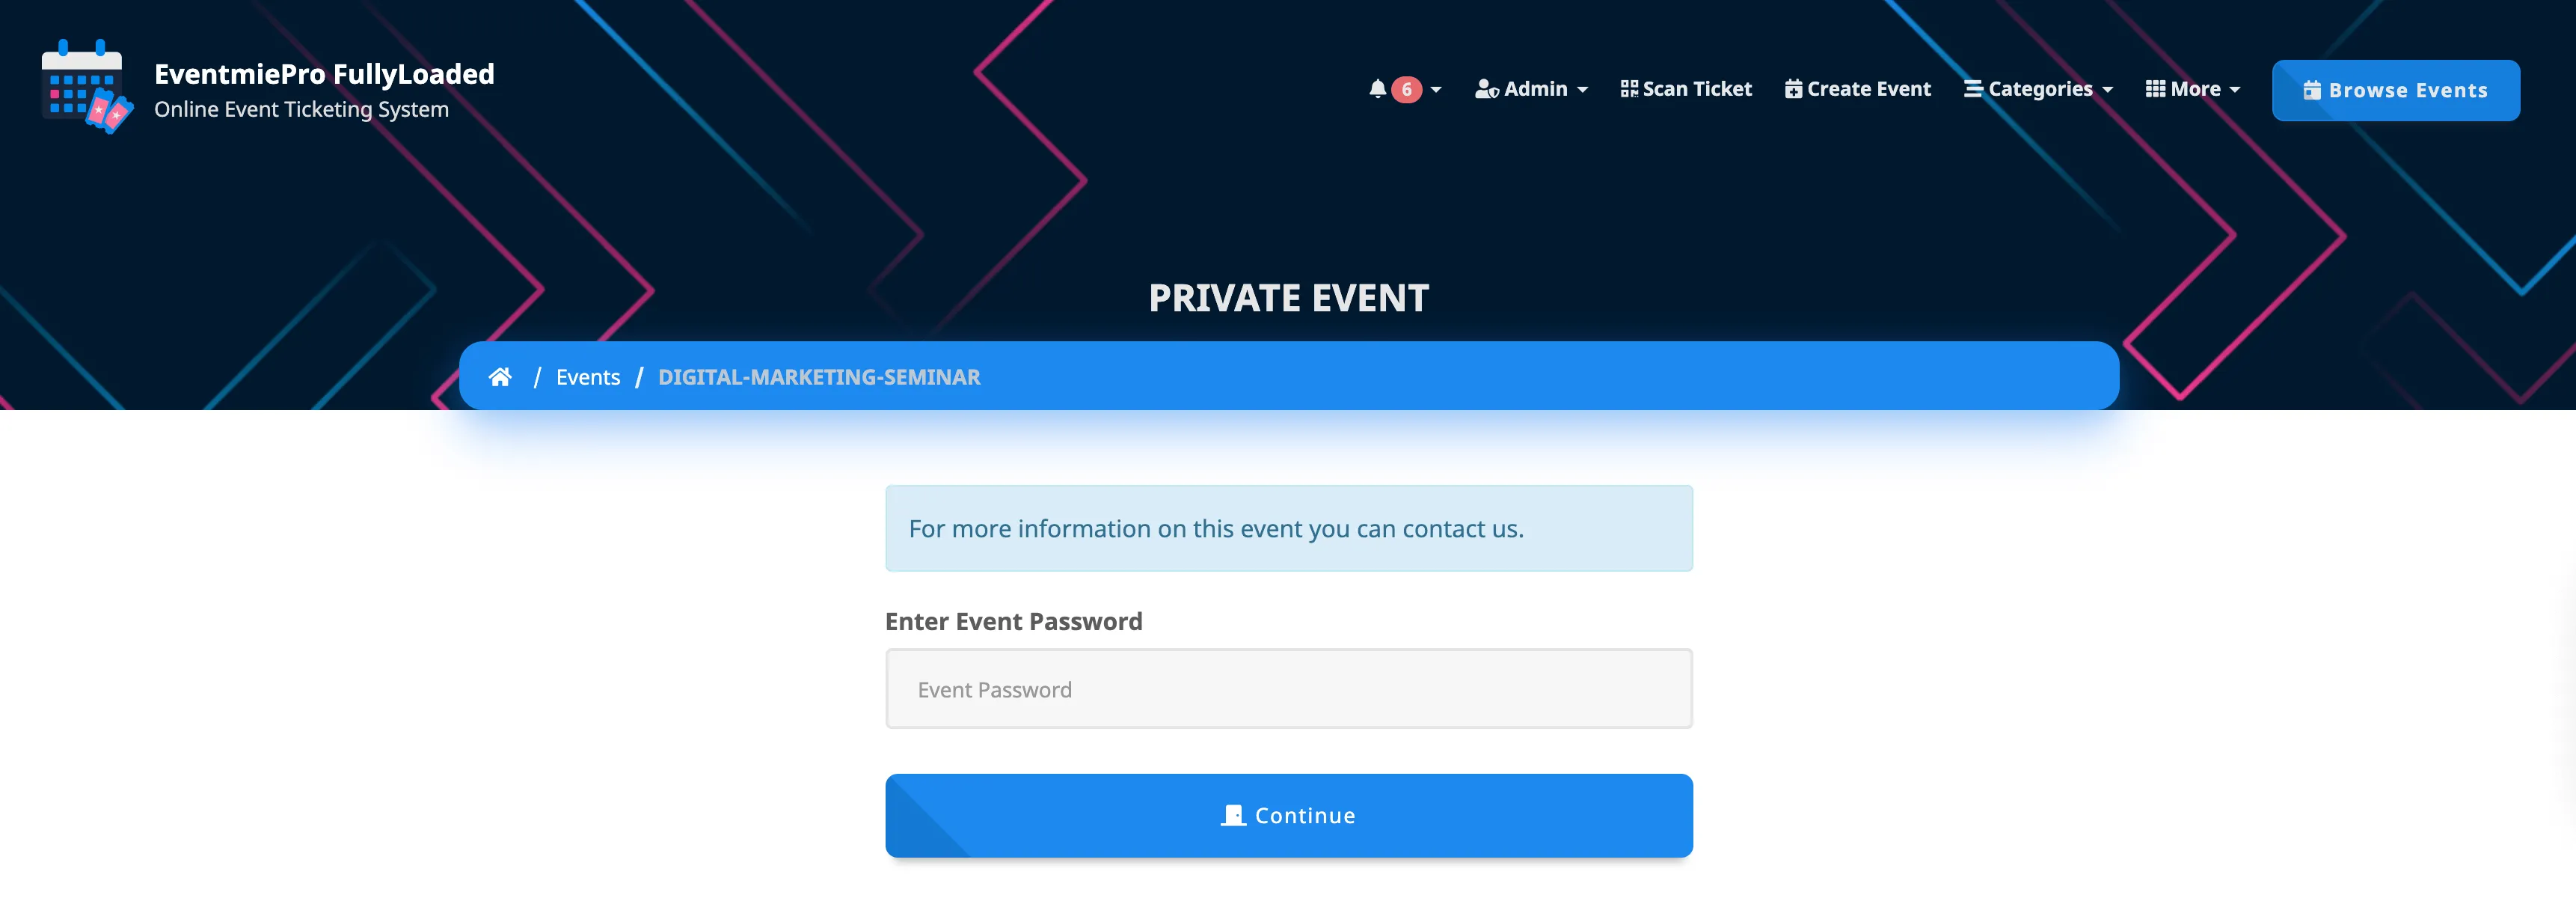 4-access-private-event